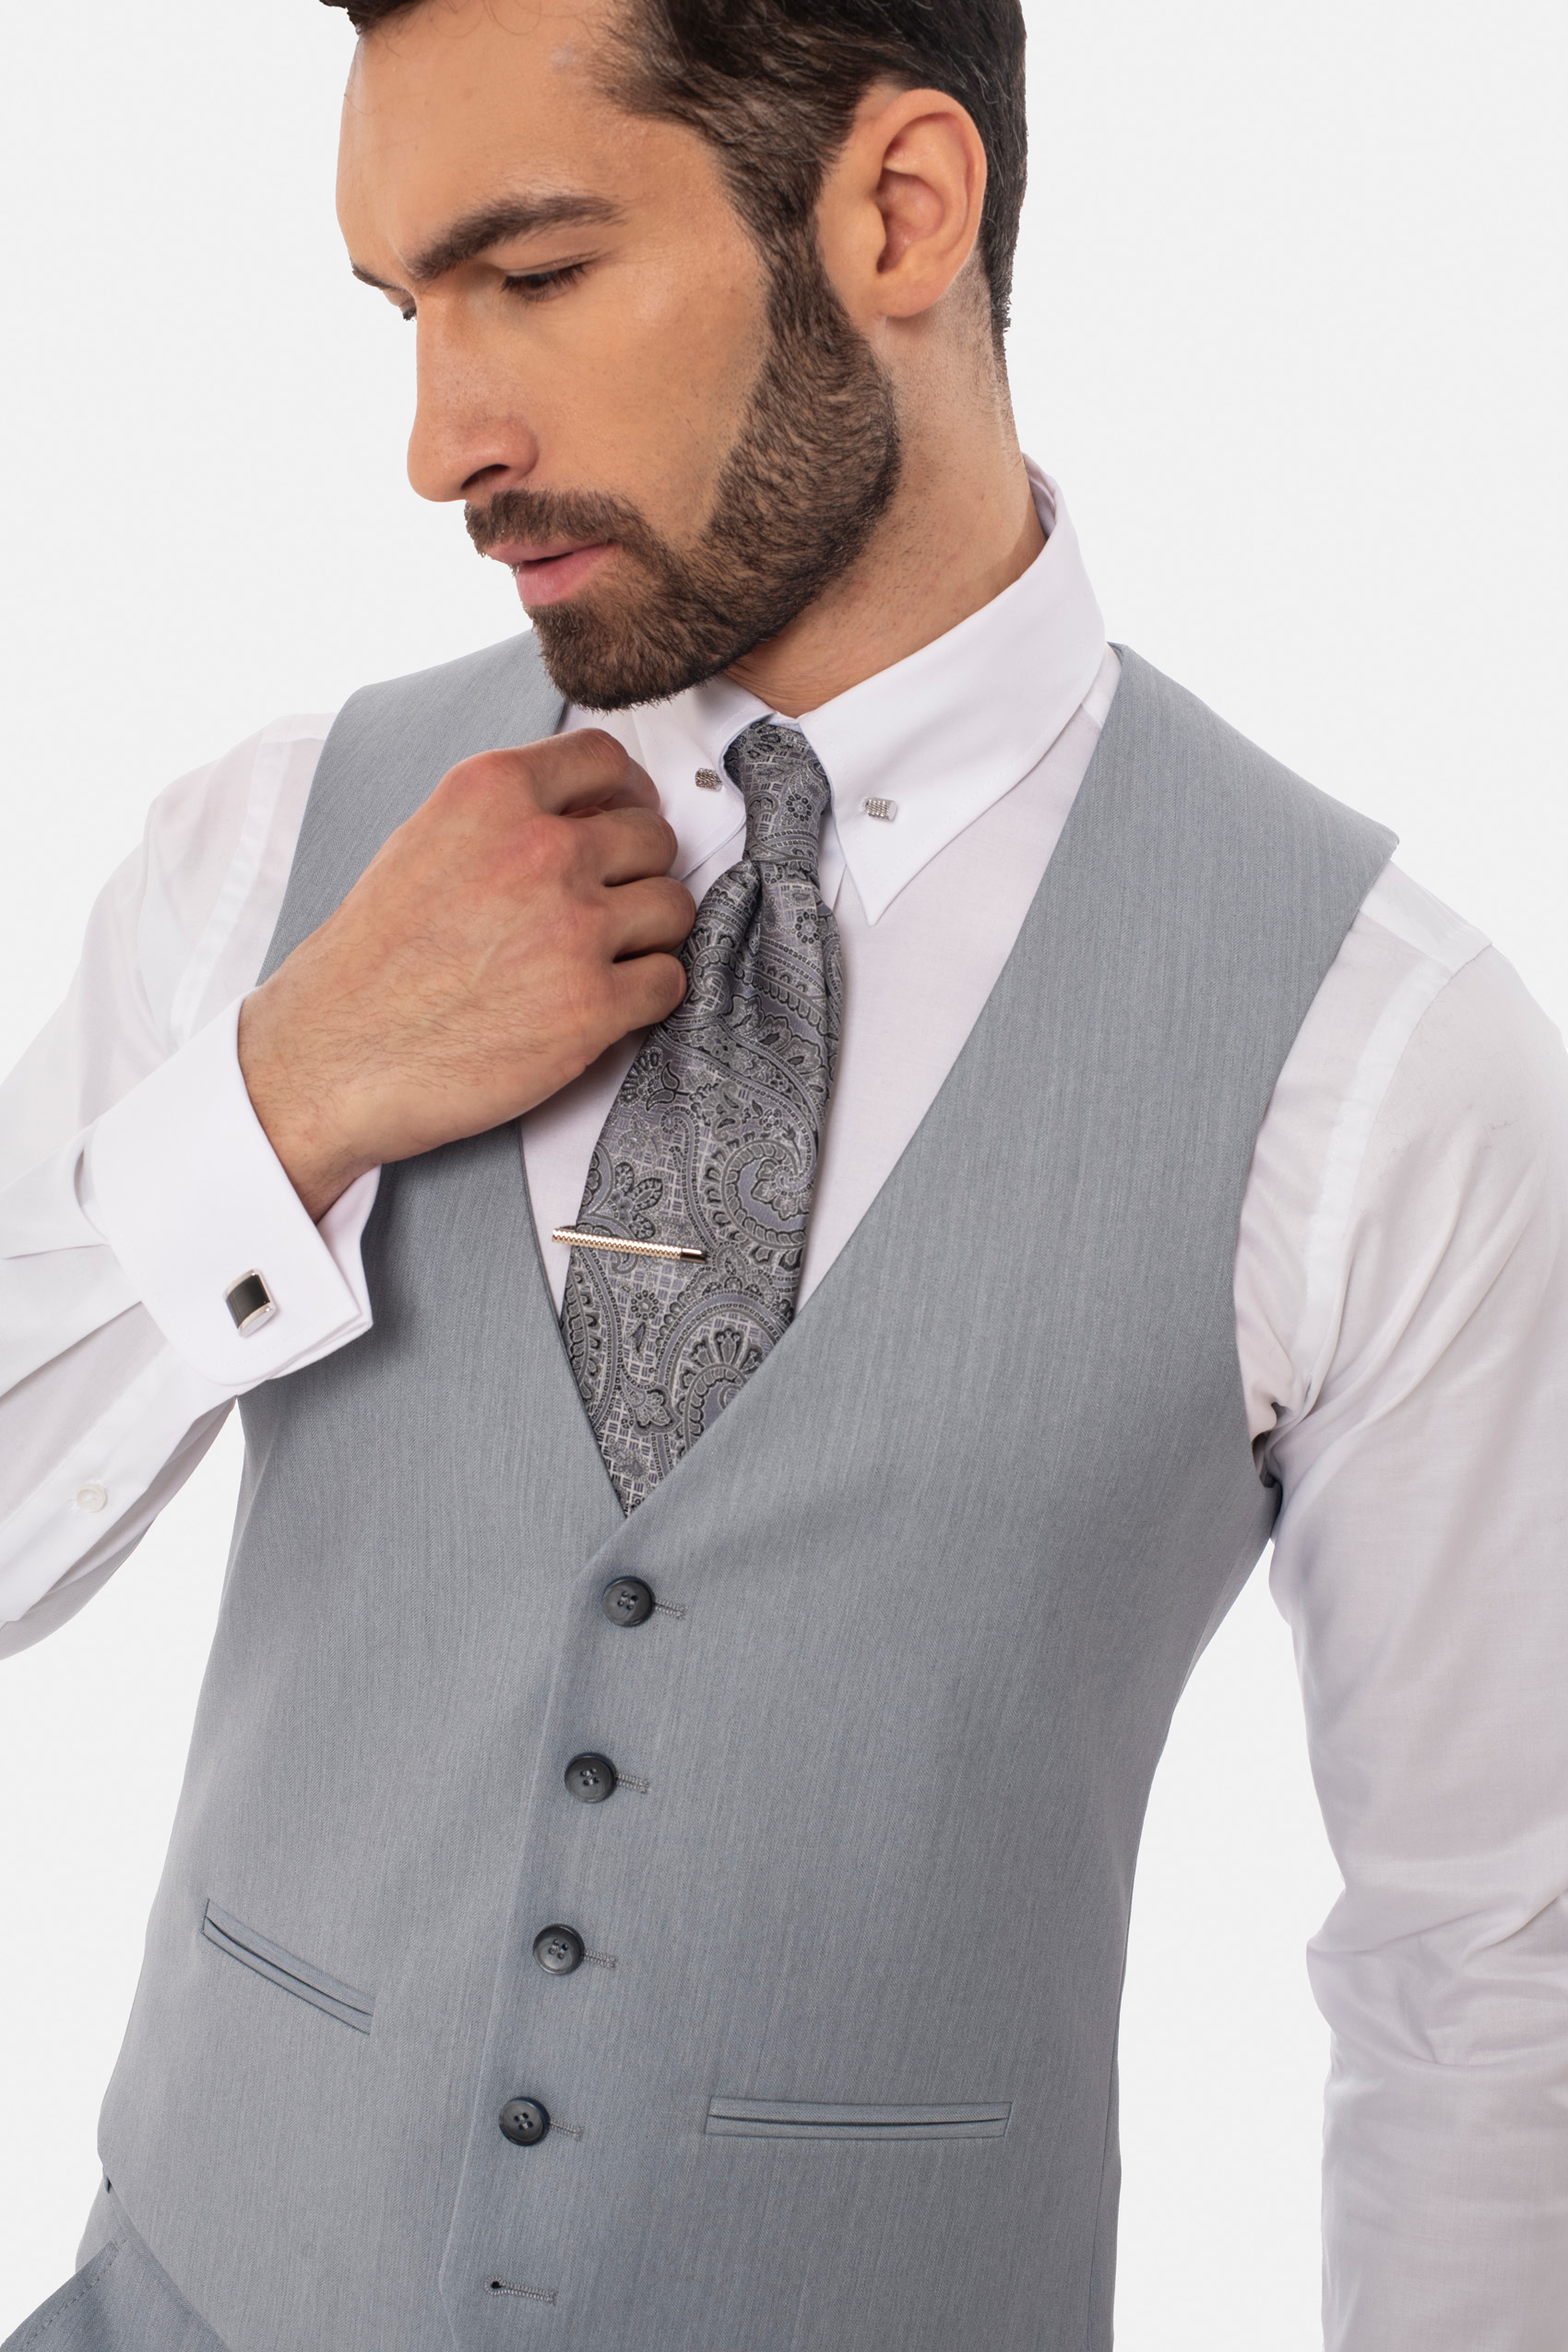 Mężczyzna ubrany w białą koszule, szarą kamizelkę i szary krawat ze spinką